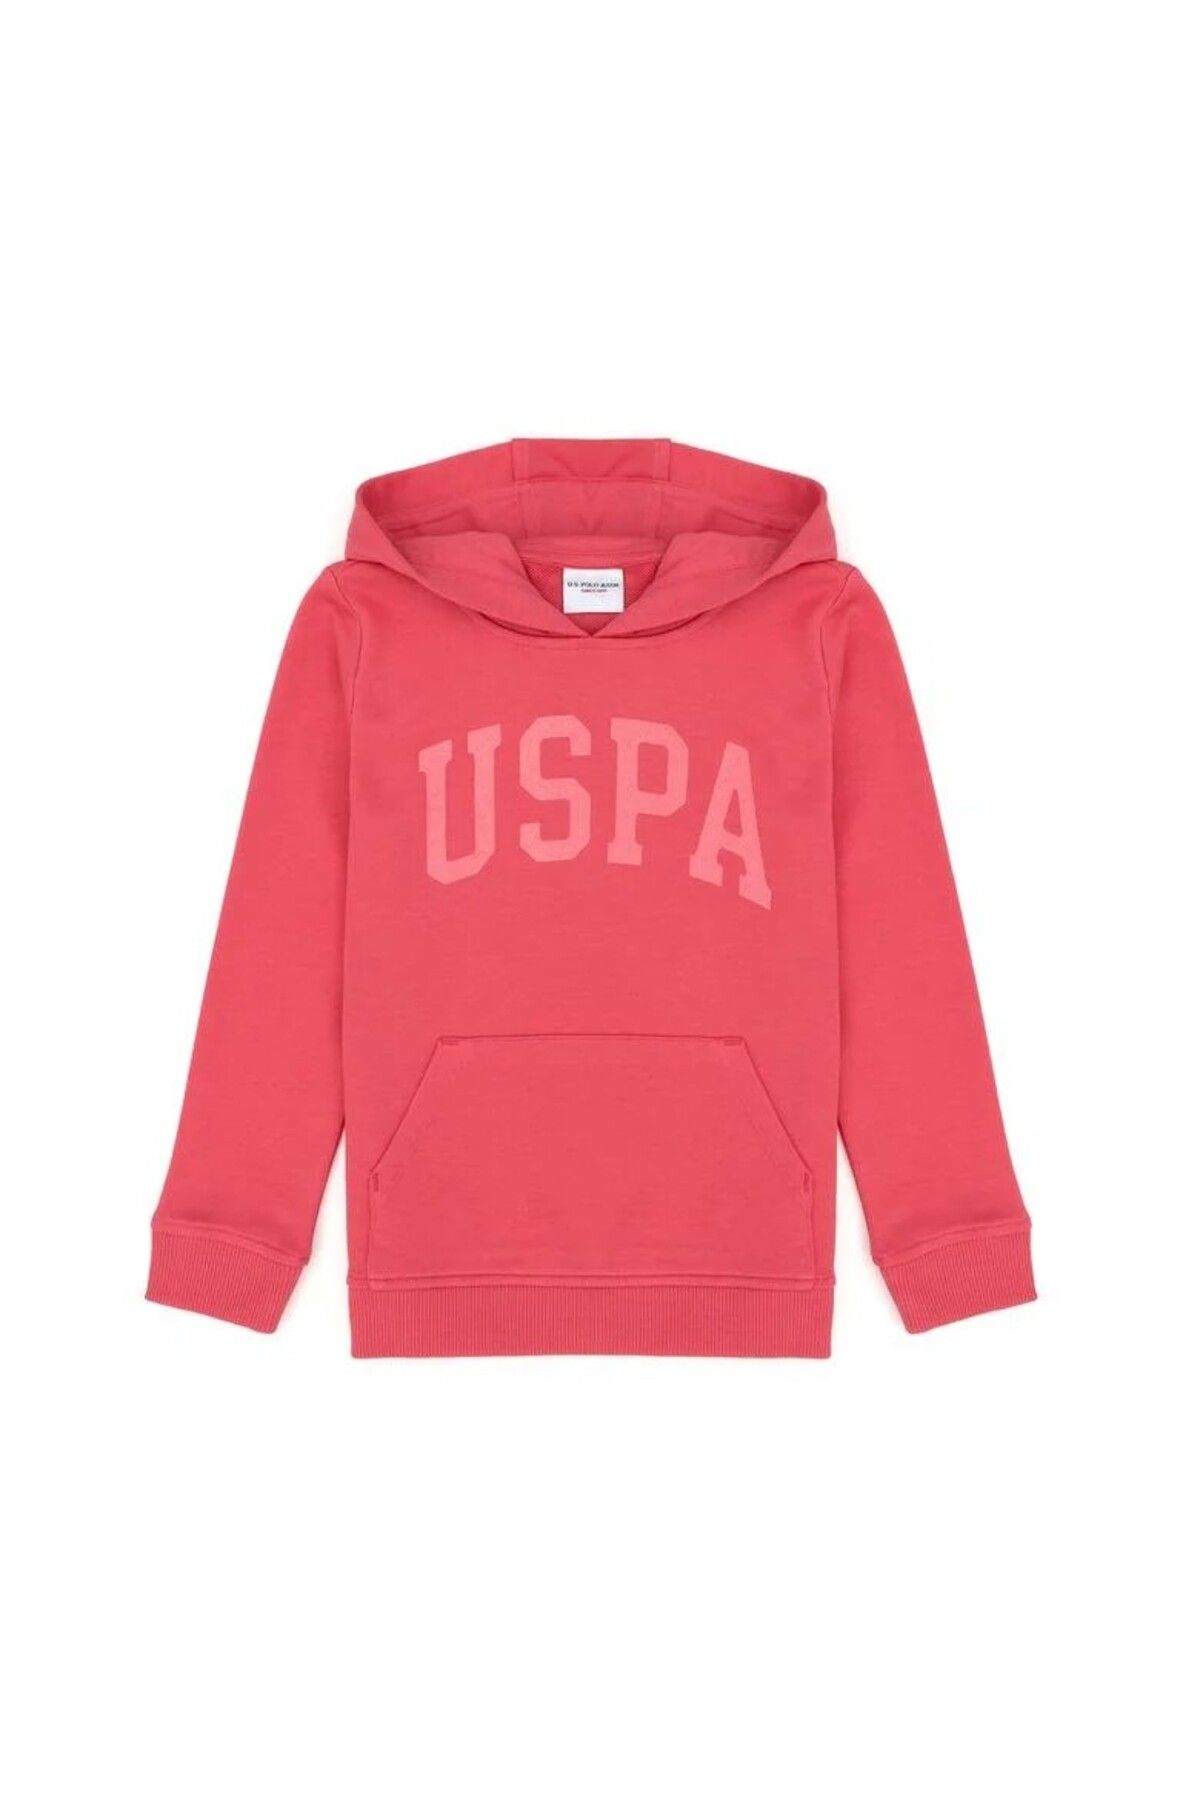 U.S. Polo Assn. Kız Çocuk Basic Kapüşonlu Sweatshirt